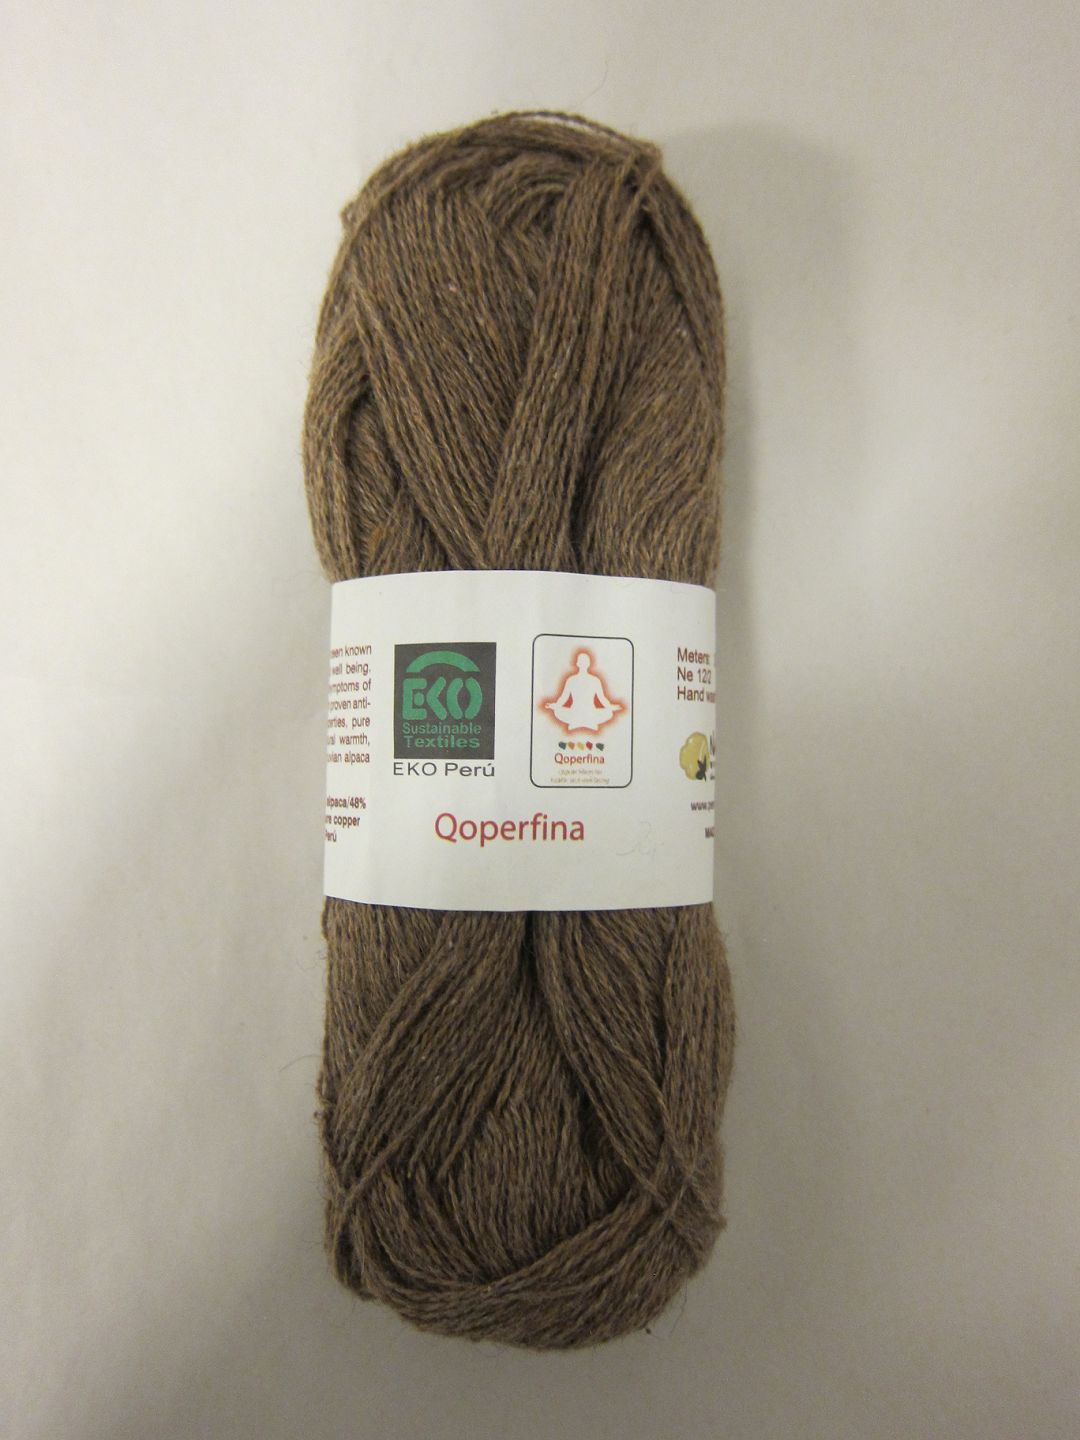 ViKaLi - Qoperfina Qoperfina er et 100% naturprodukt Peru, som består af økologiske